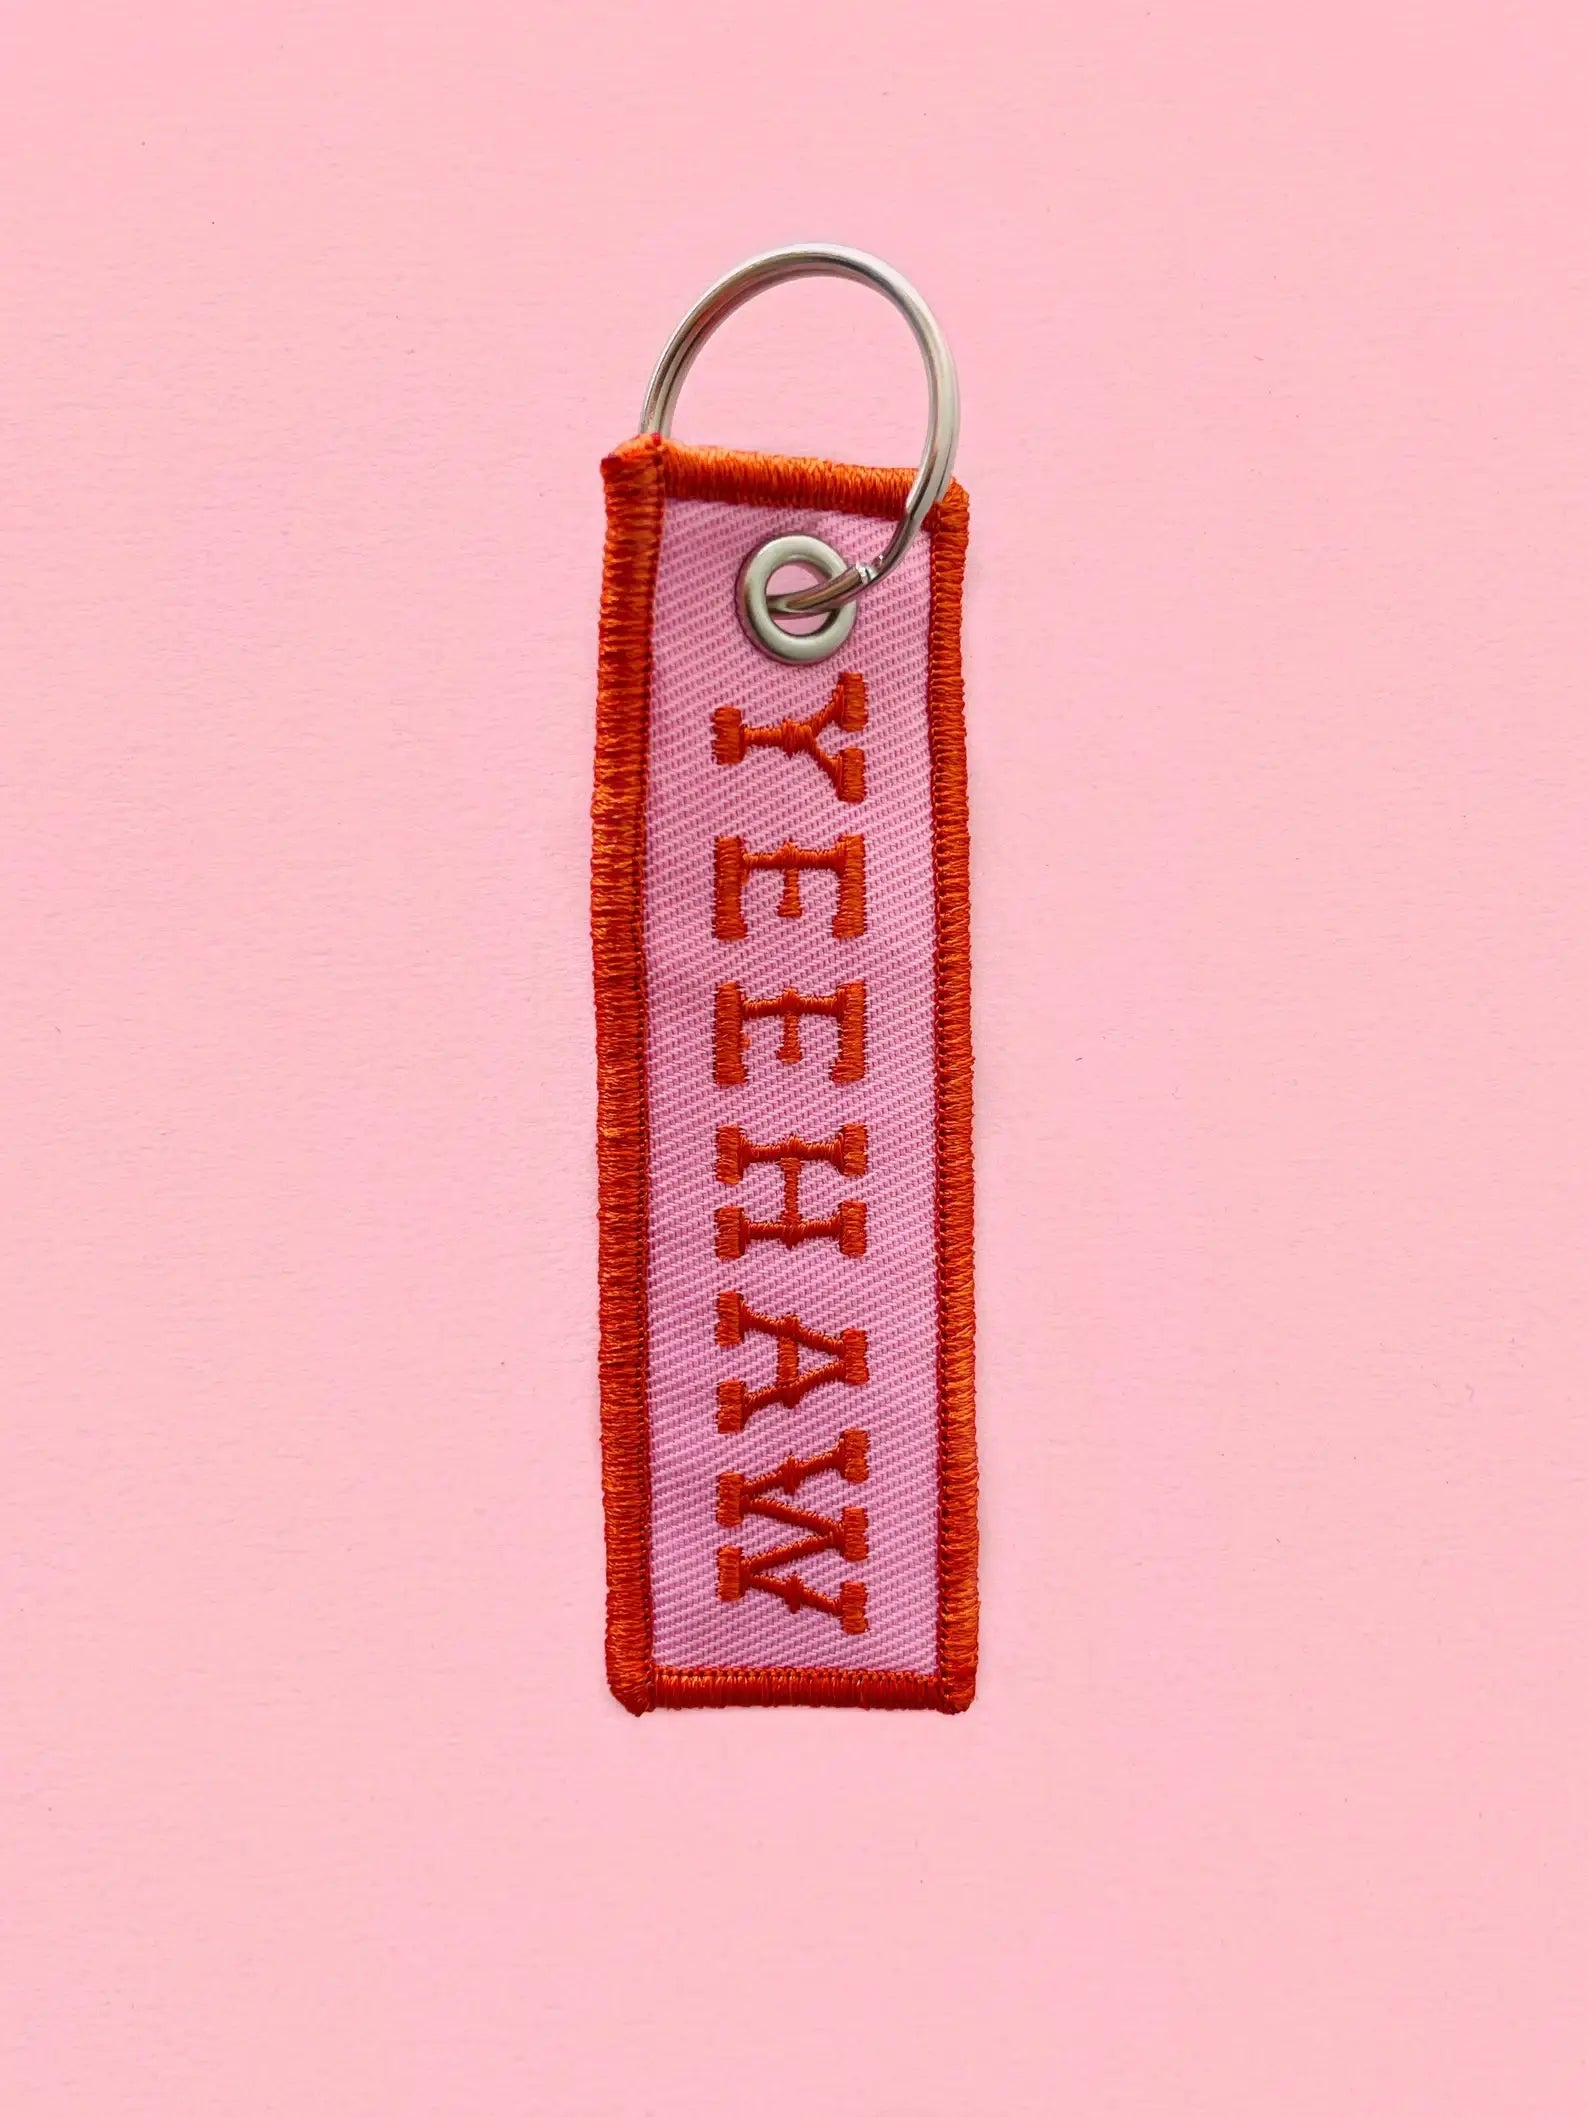 Yeehaw Embroidered Keychain